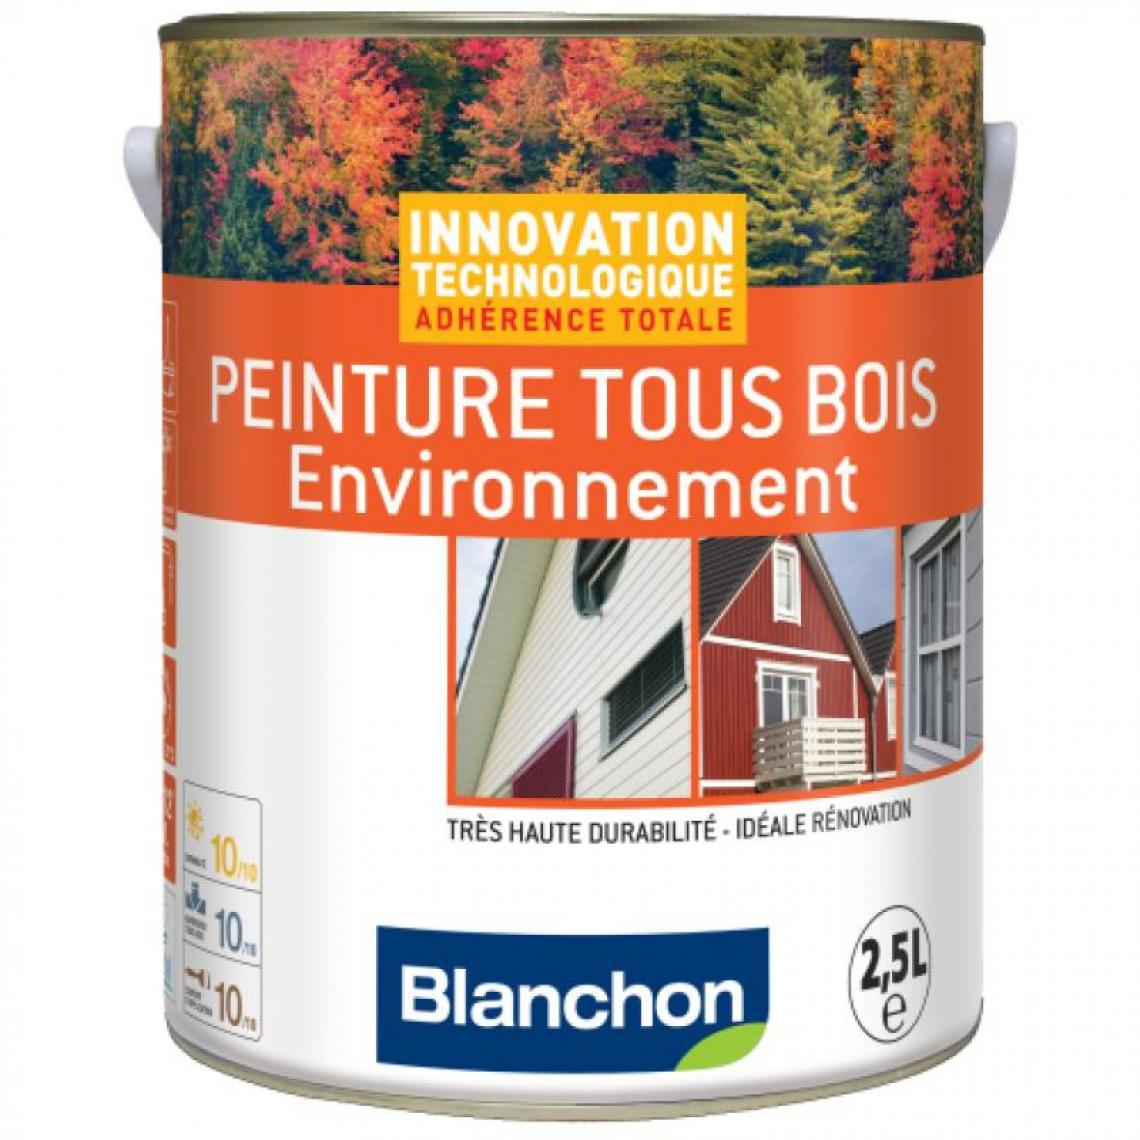 Blanchon - Peinture microporeuse hydrofuge Tous Bois Environnement, gris anthracite 7016 - Produit de finition pour bois